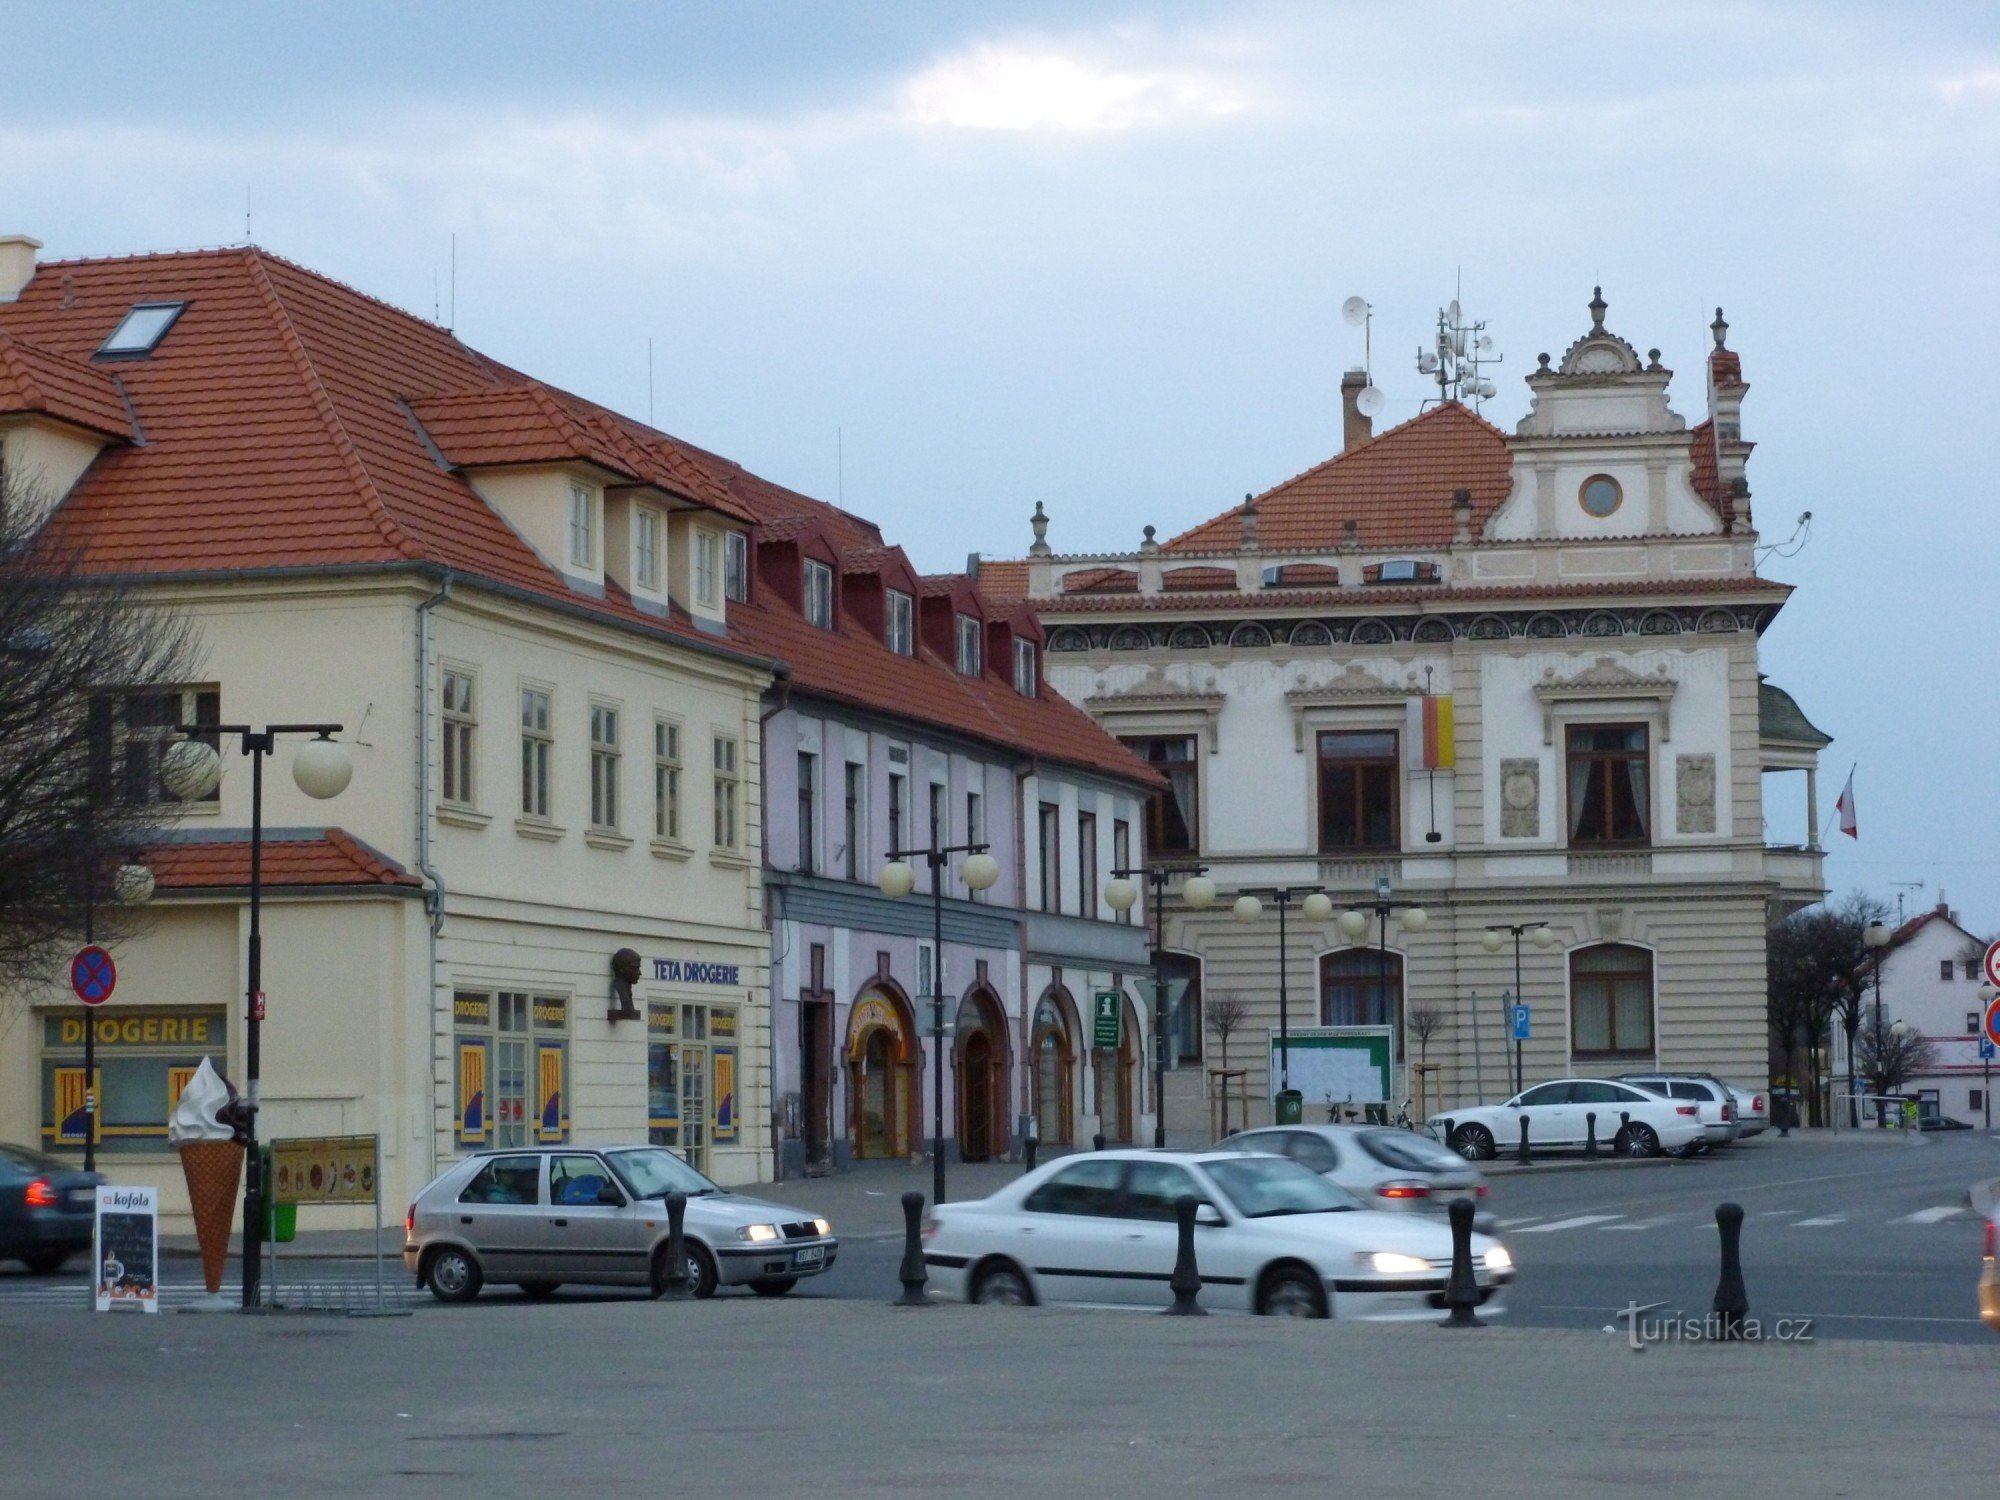 Podebrady - Jiřího náměstí com centro de informações